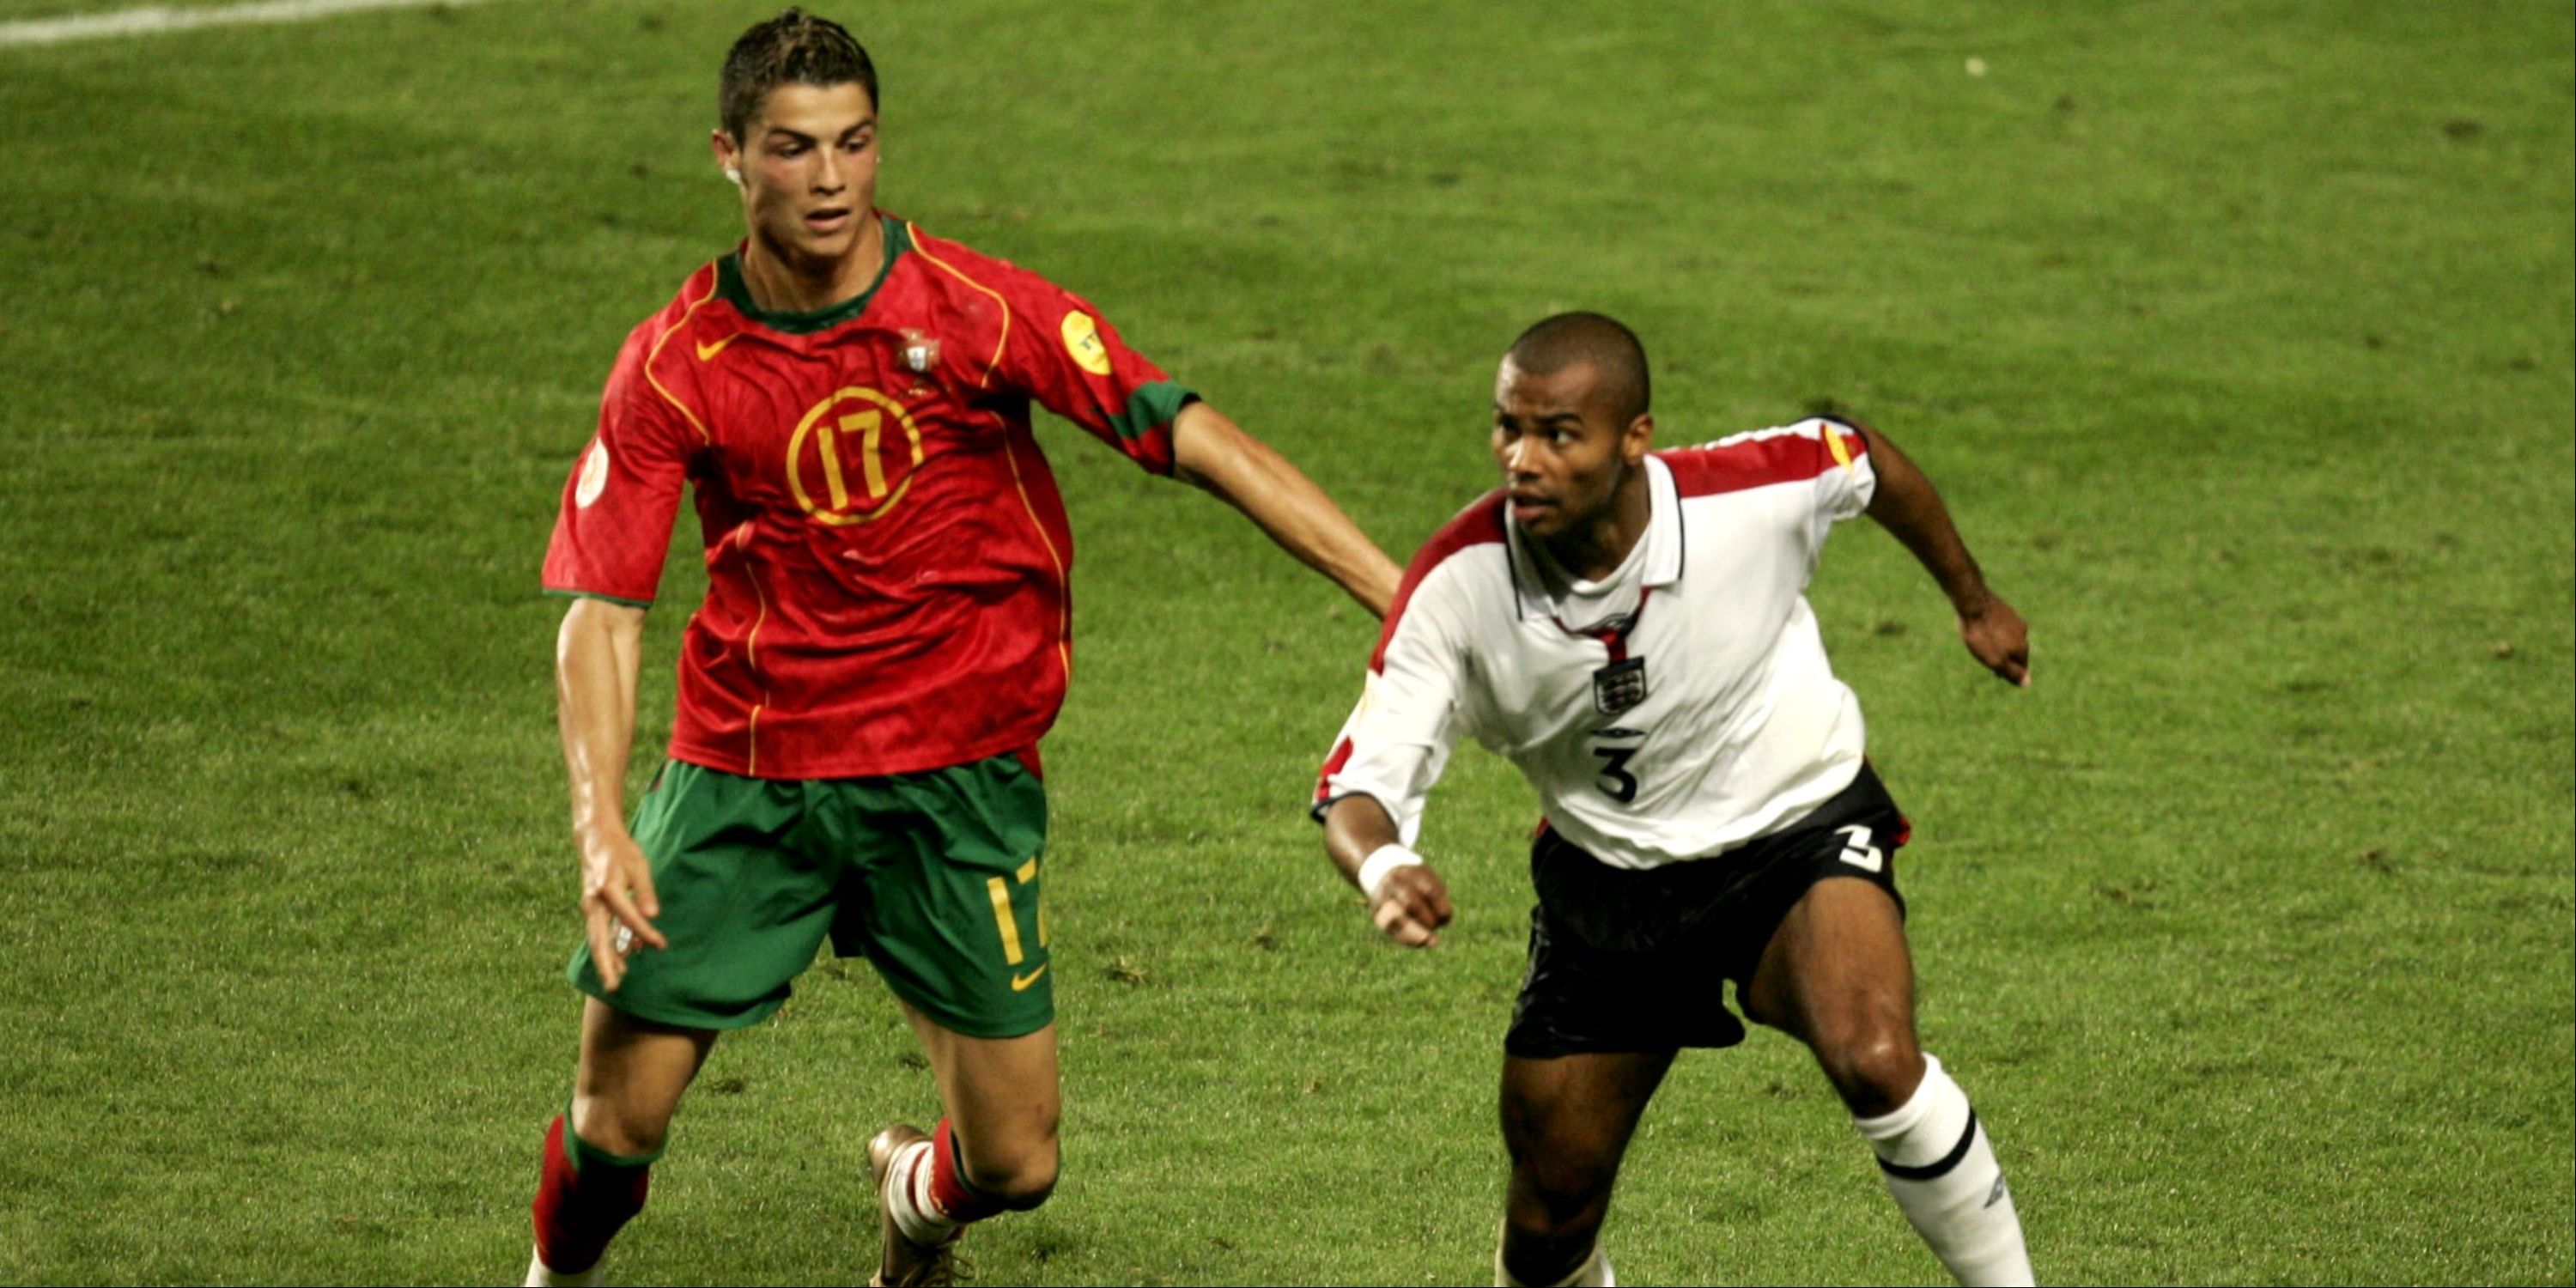 Ashley Cole and Cristiano Ronaldo at Euro 2004.